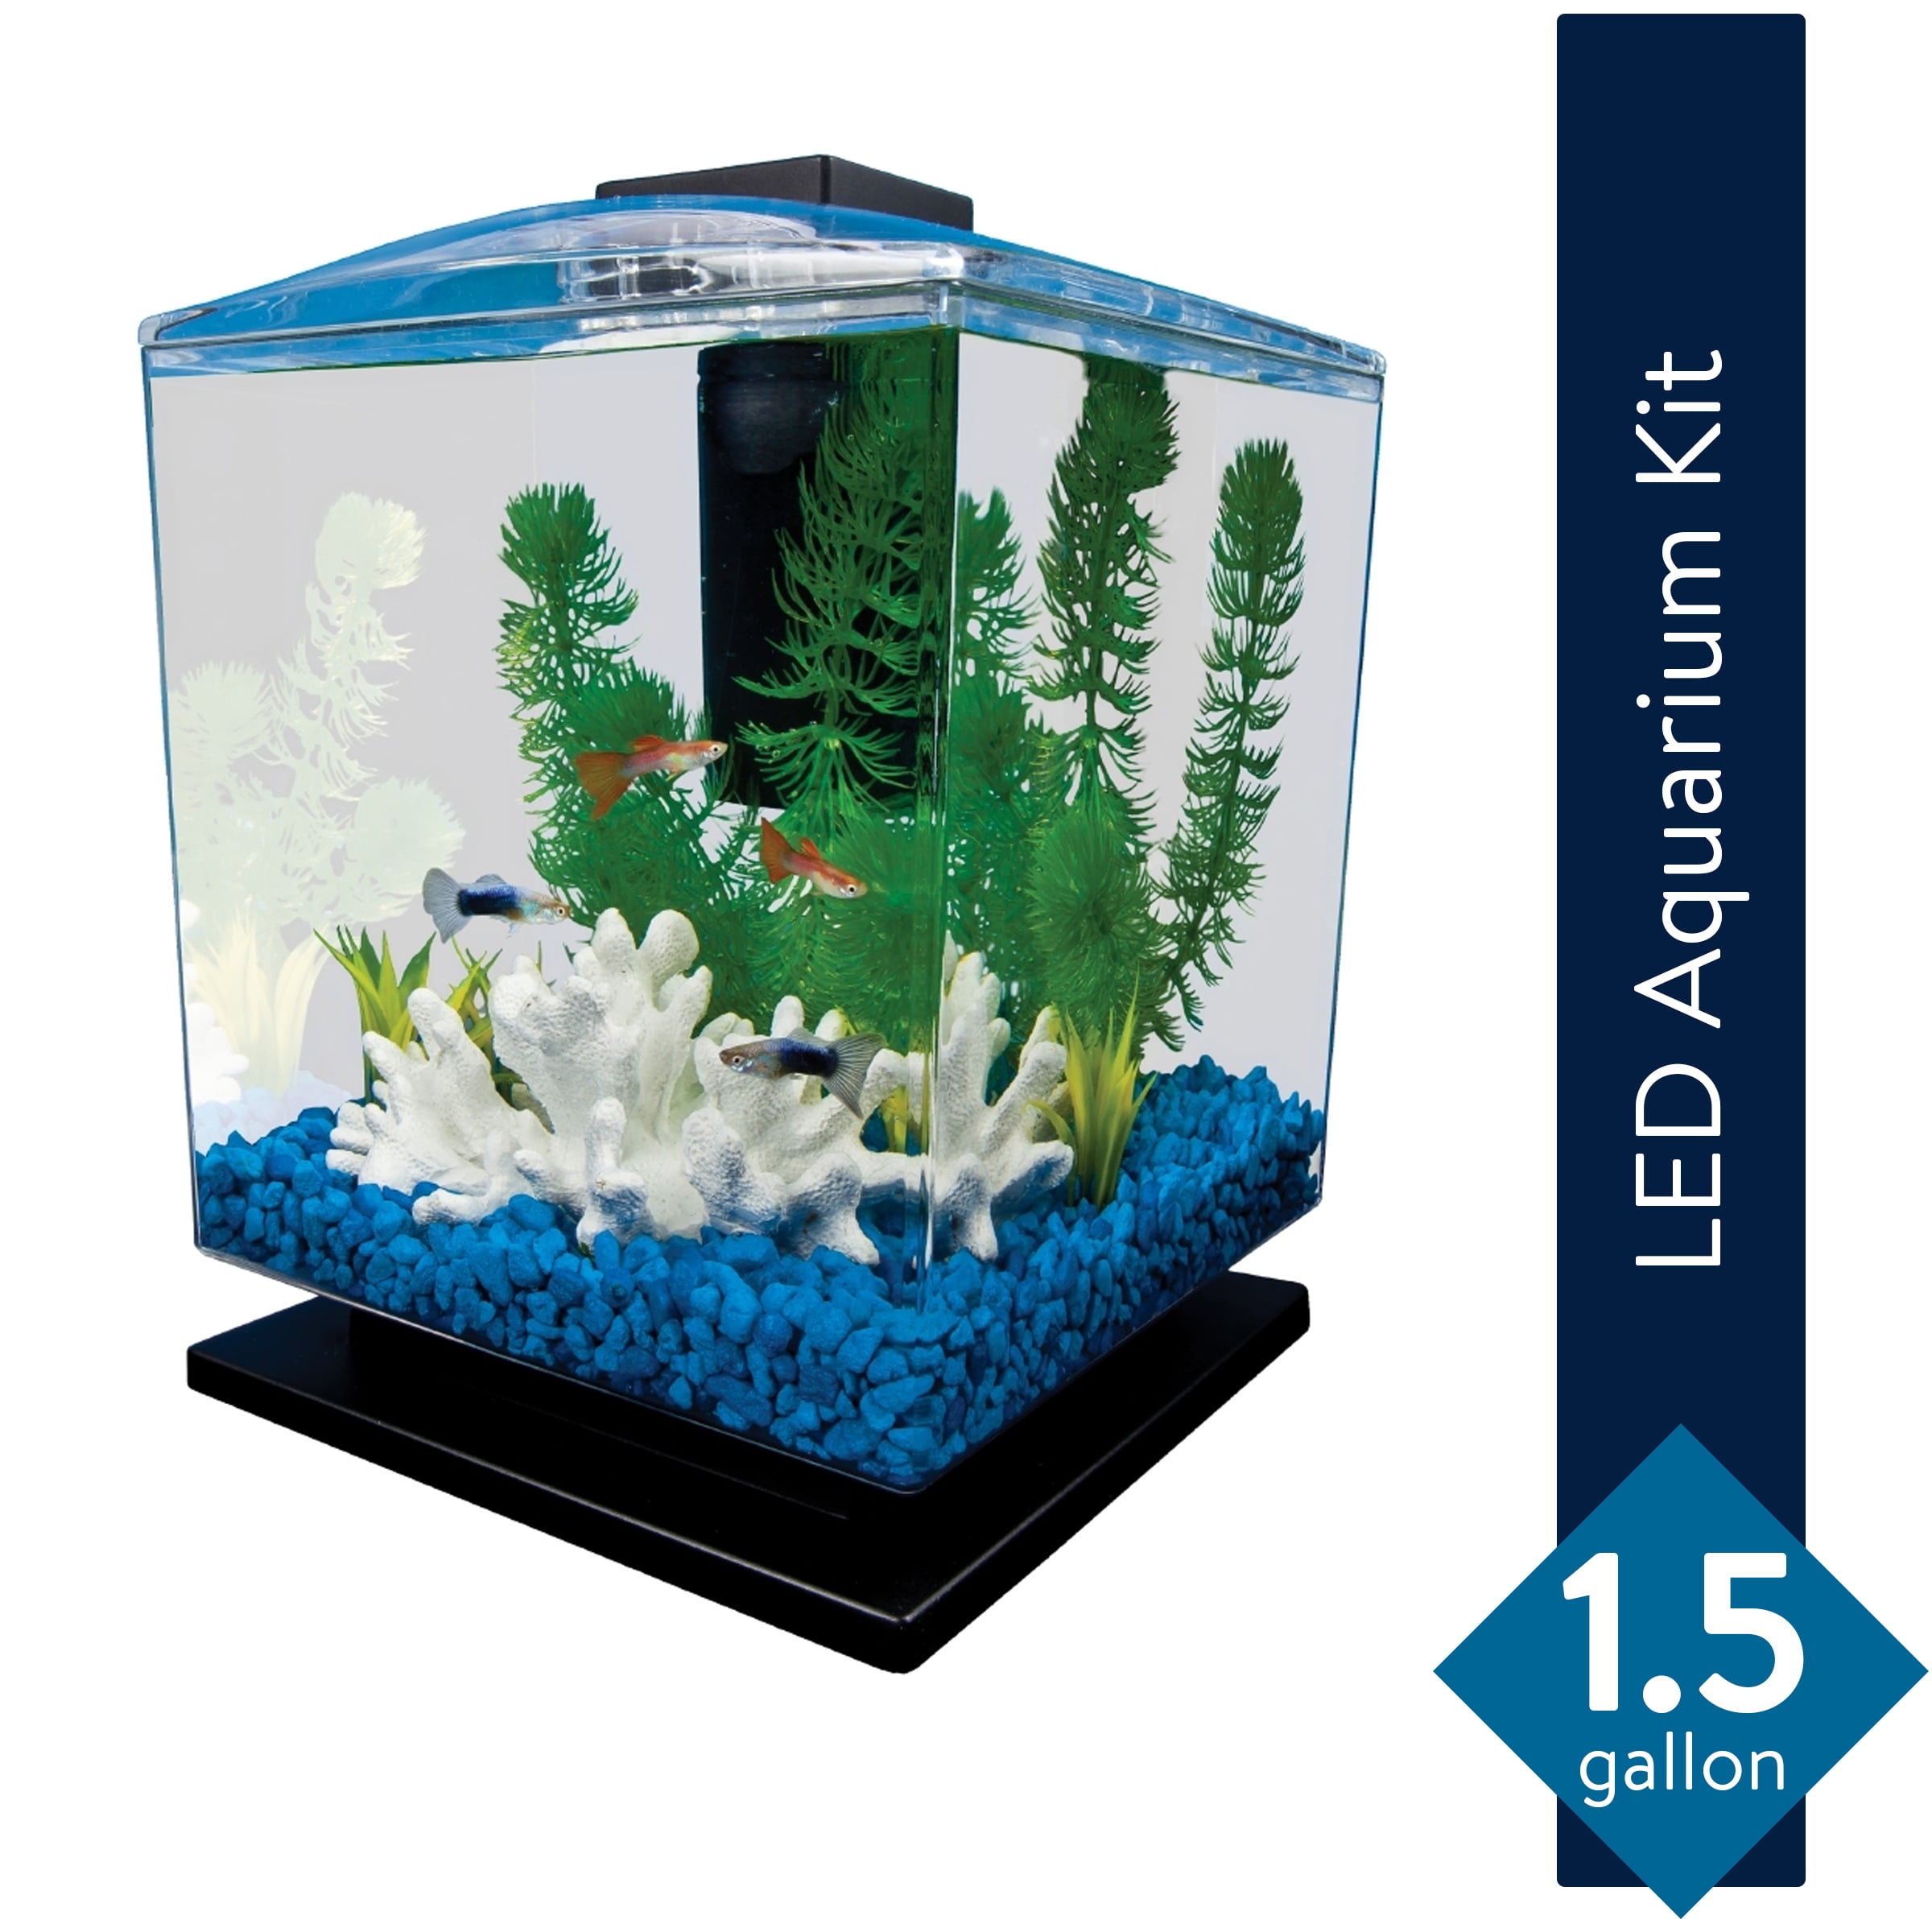 tetra led aquarium kit